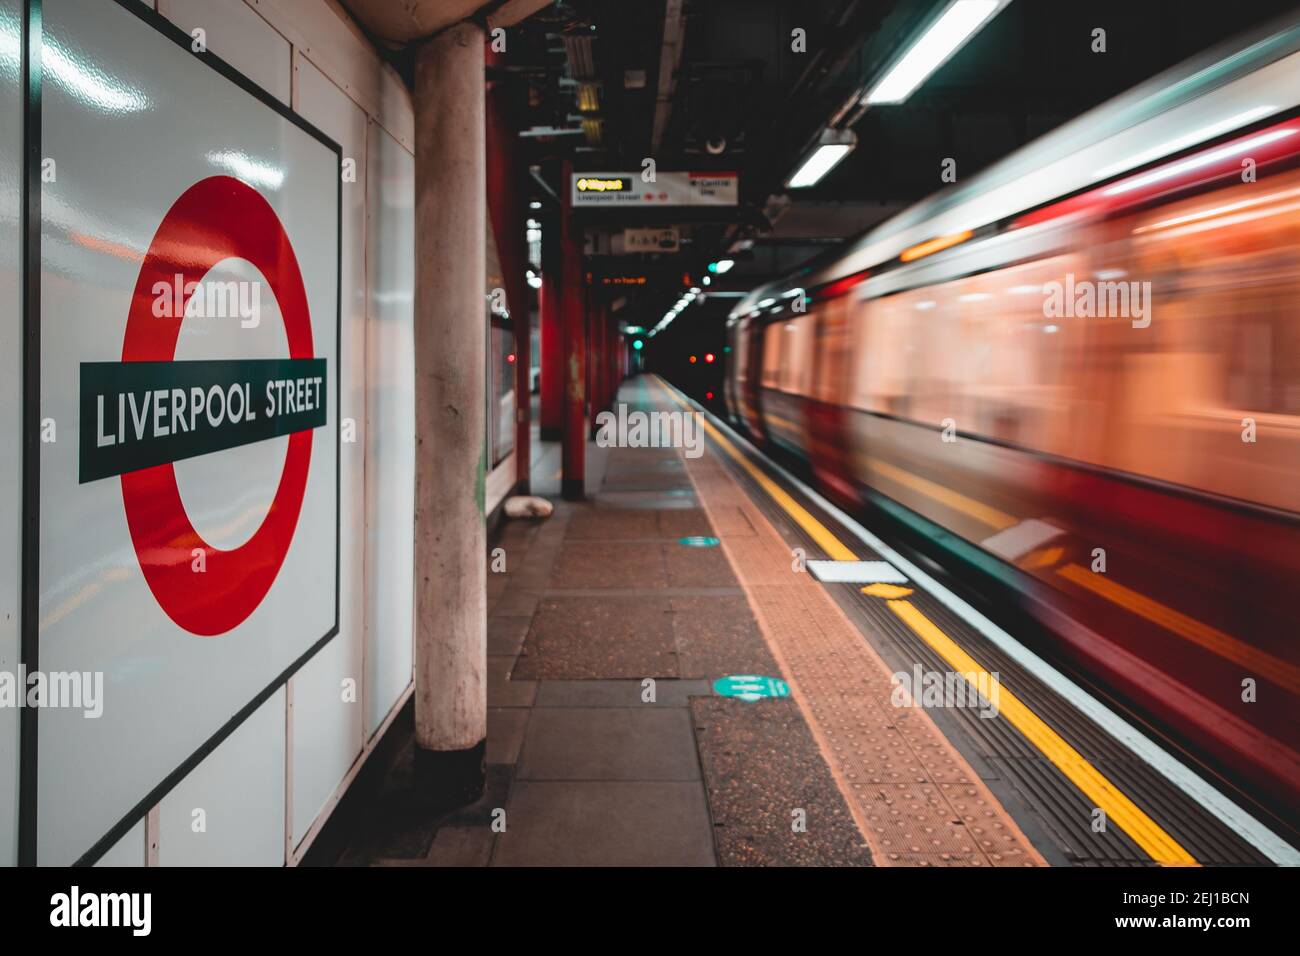 Londres UK janvier 2021 panneau de la station de métro Liverpool Street, train en mouvement flou. Les plates-formes sont vides pendant le covid national du Royaume-Uni Banque D'Images